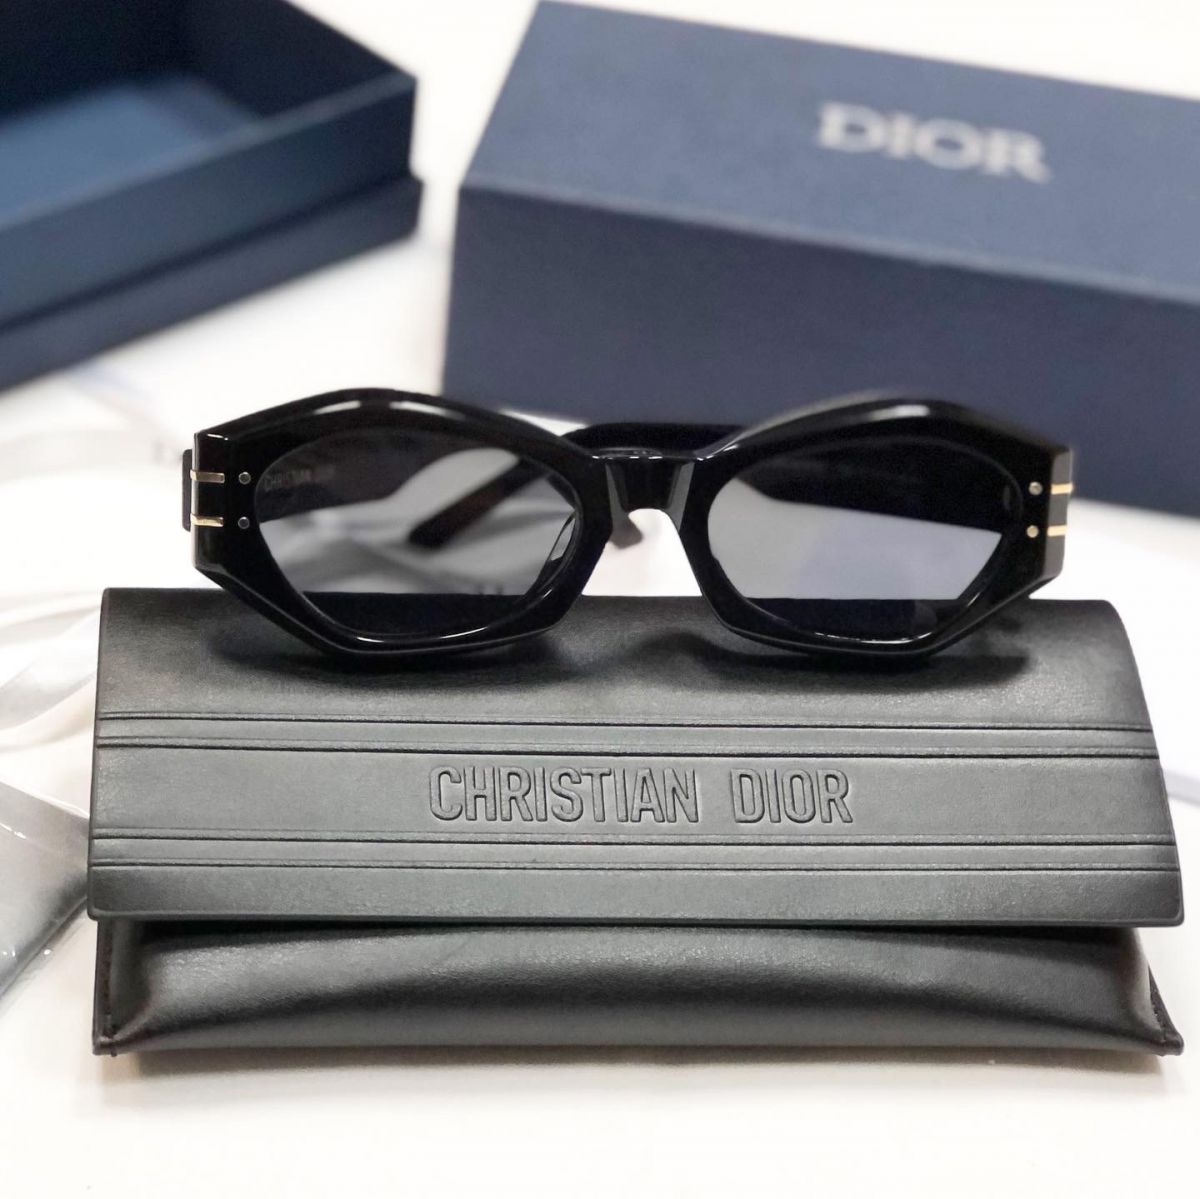 Очки Christian Dior цена 23 078 руб /в коробке/ 